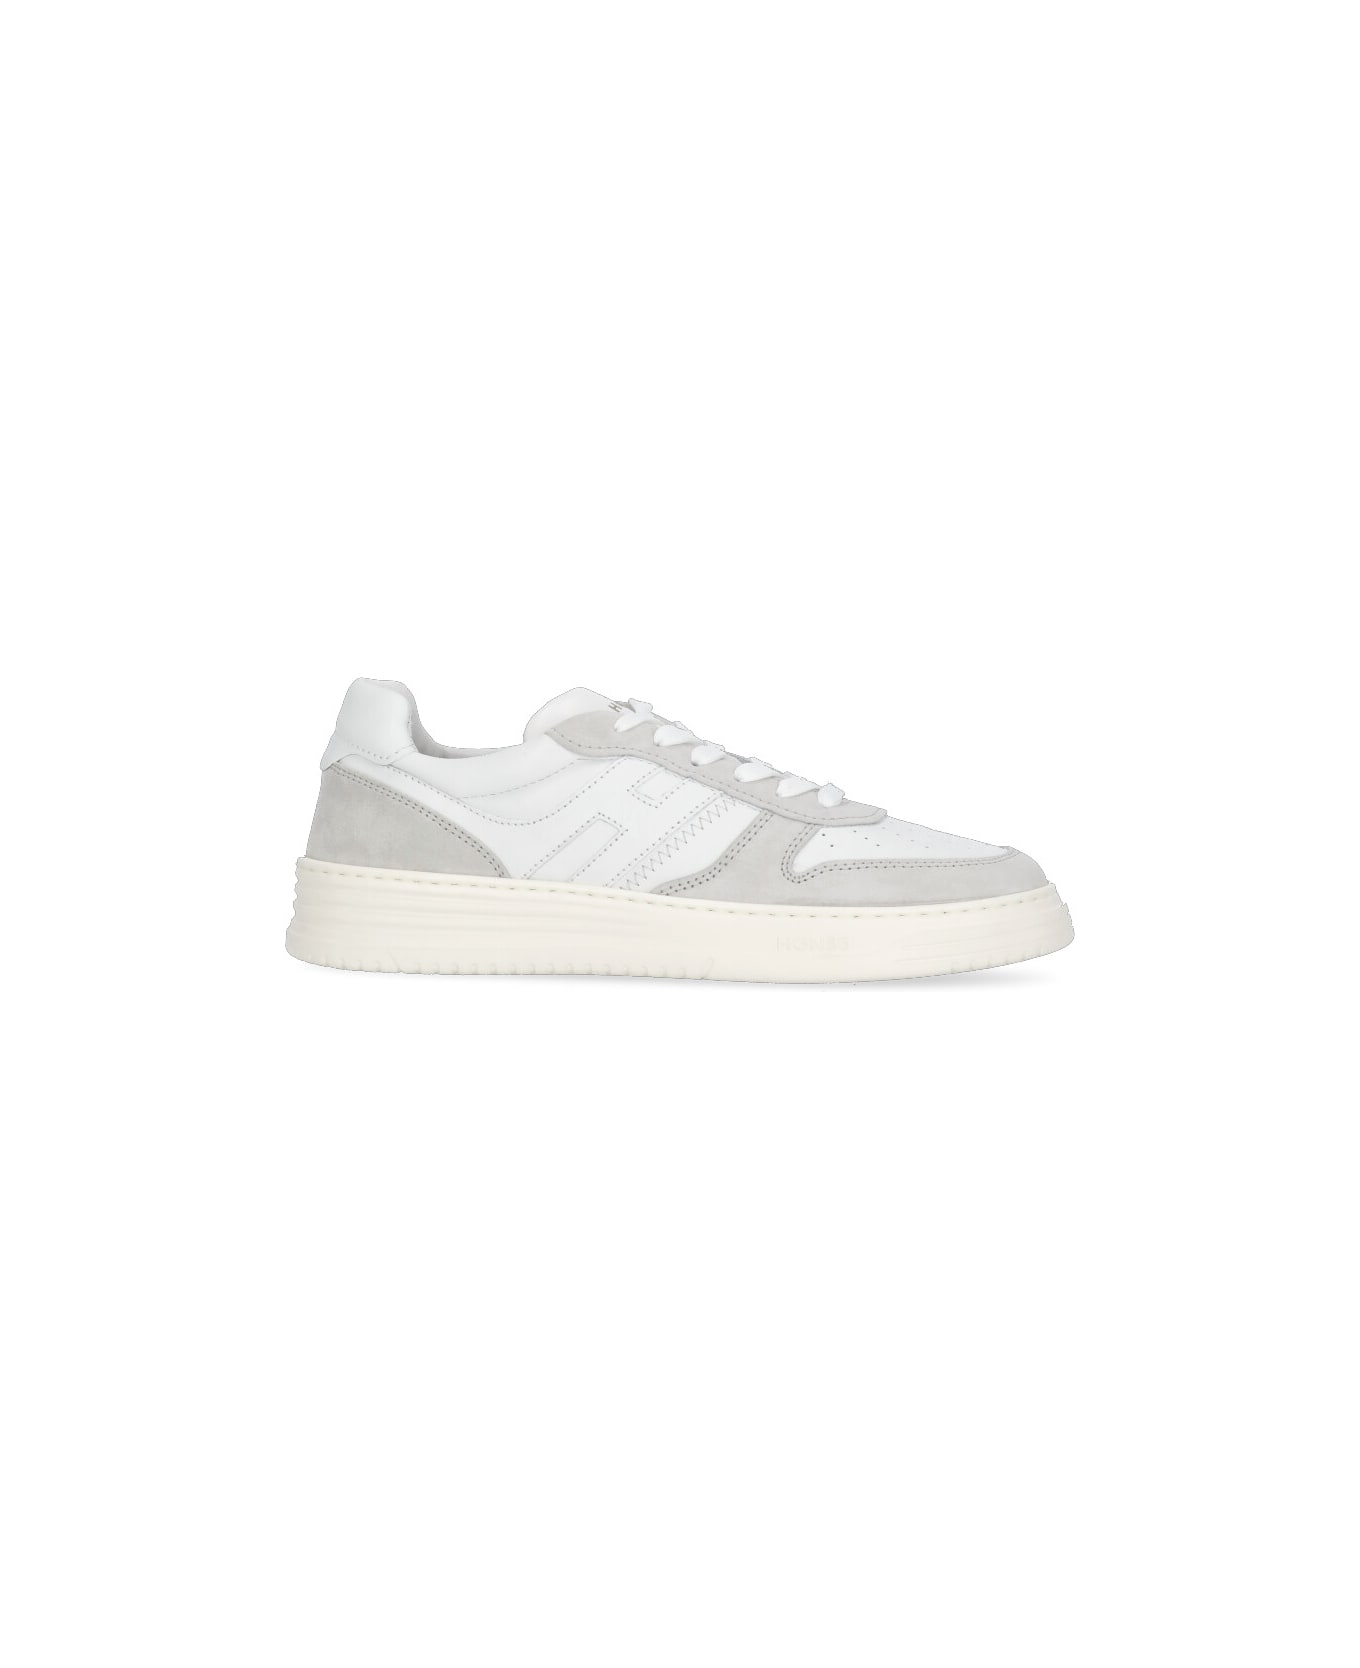 Hogan H630 Sneakers - White/beige